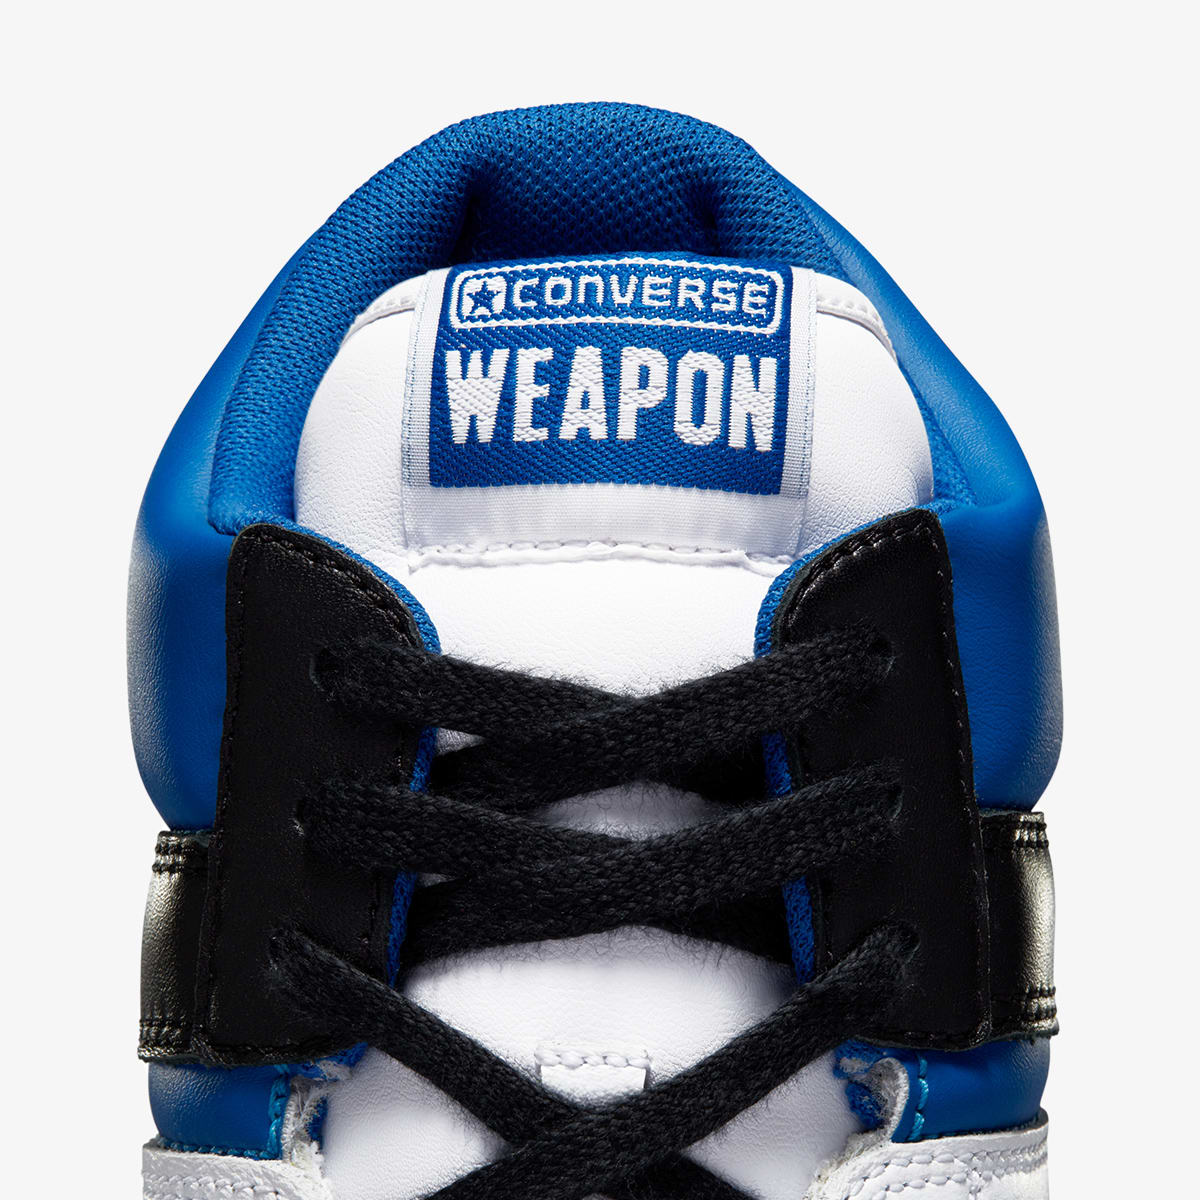 Converse x Fragment Weapon (White, Sport Royal & Black) | END